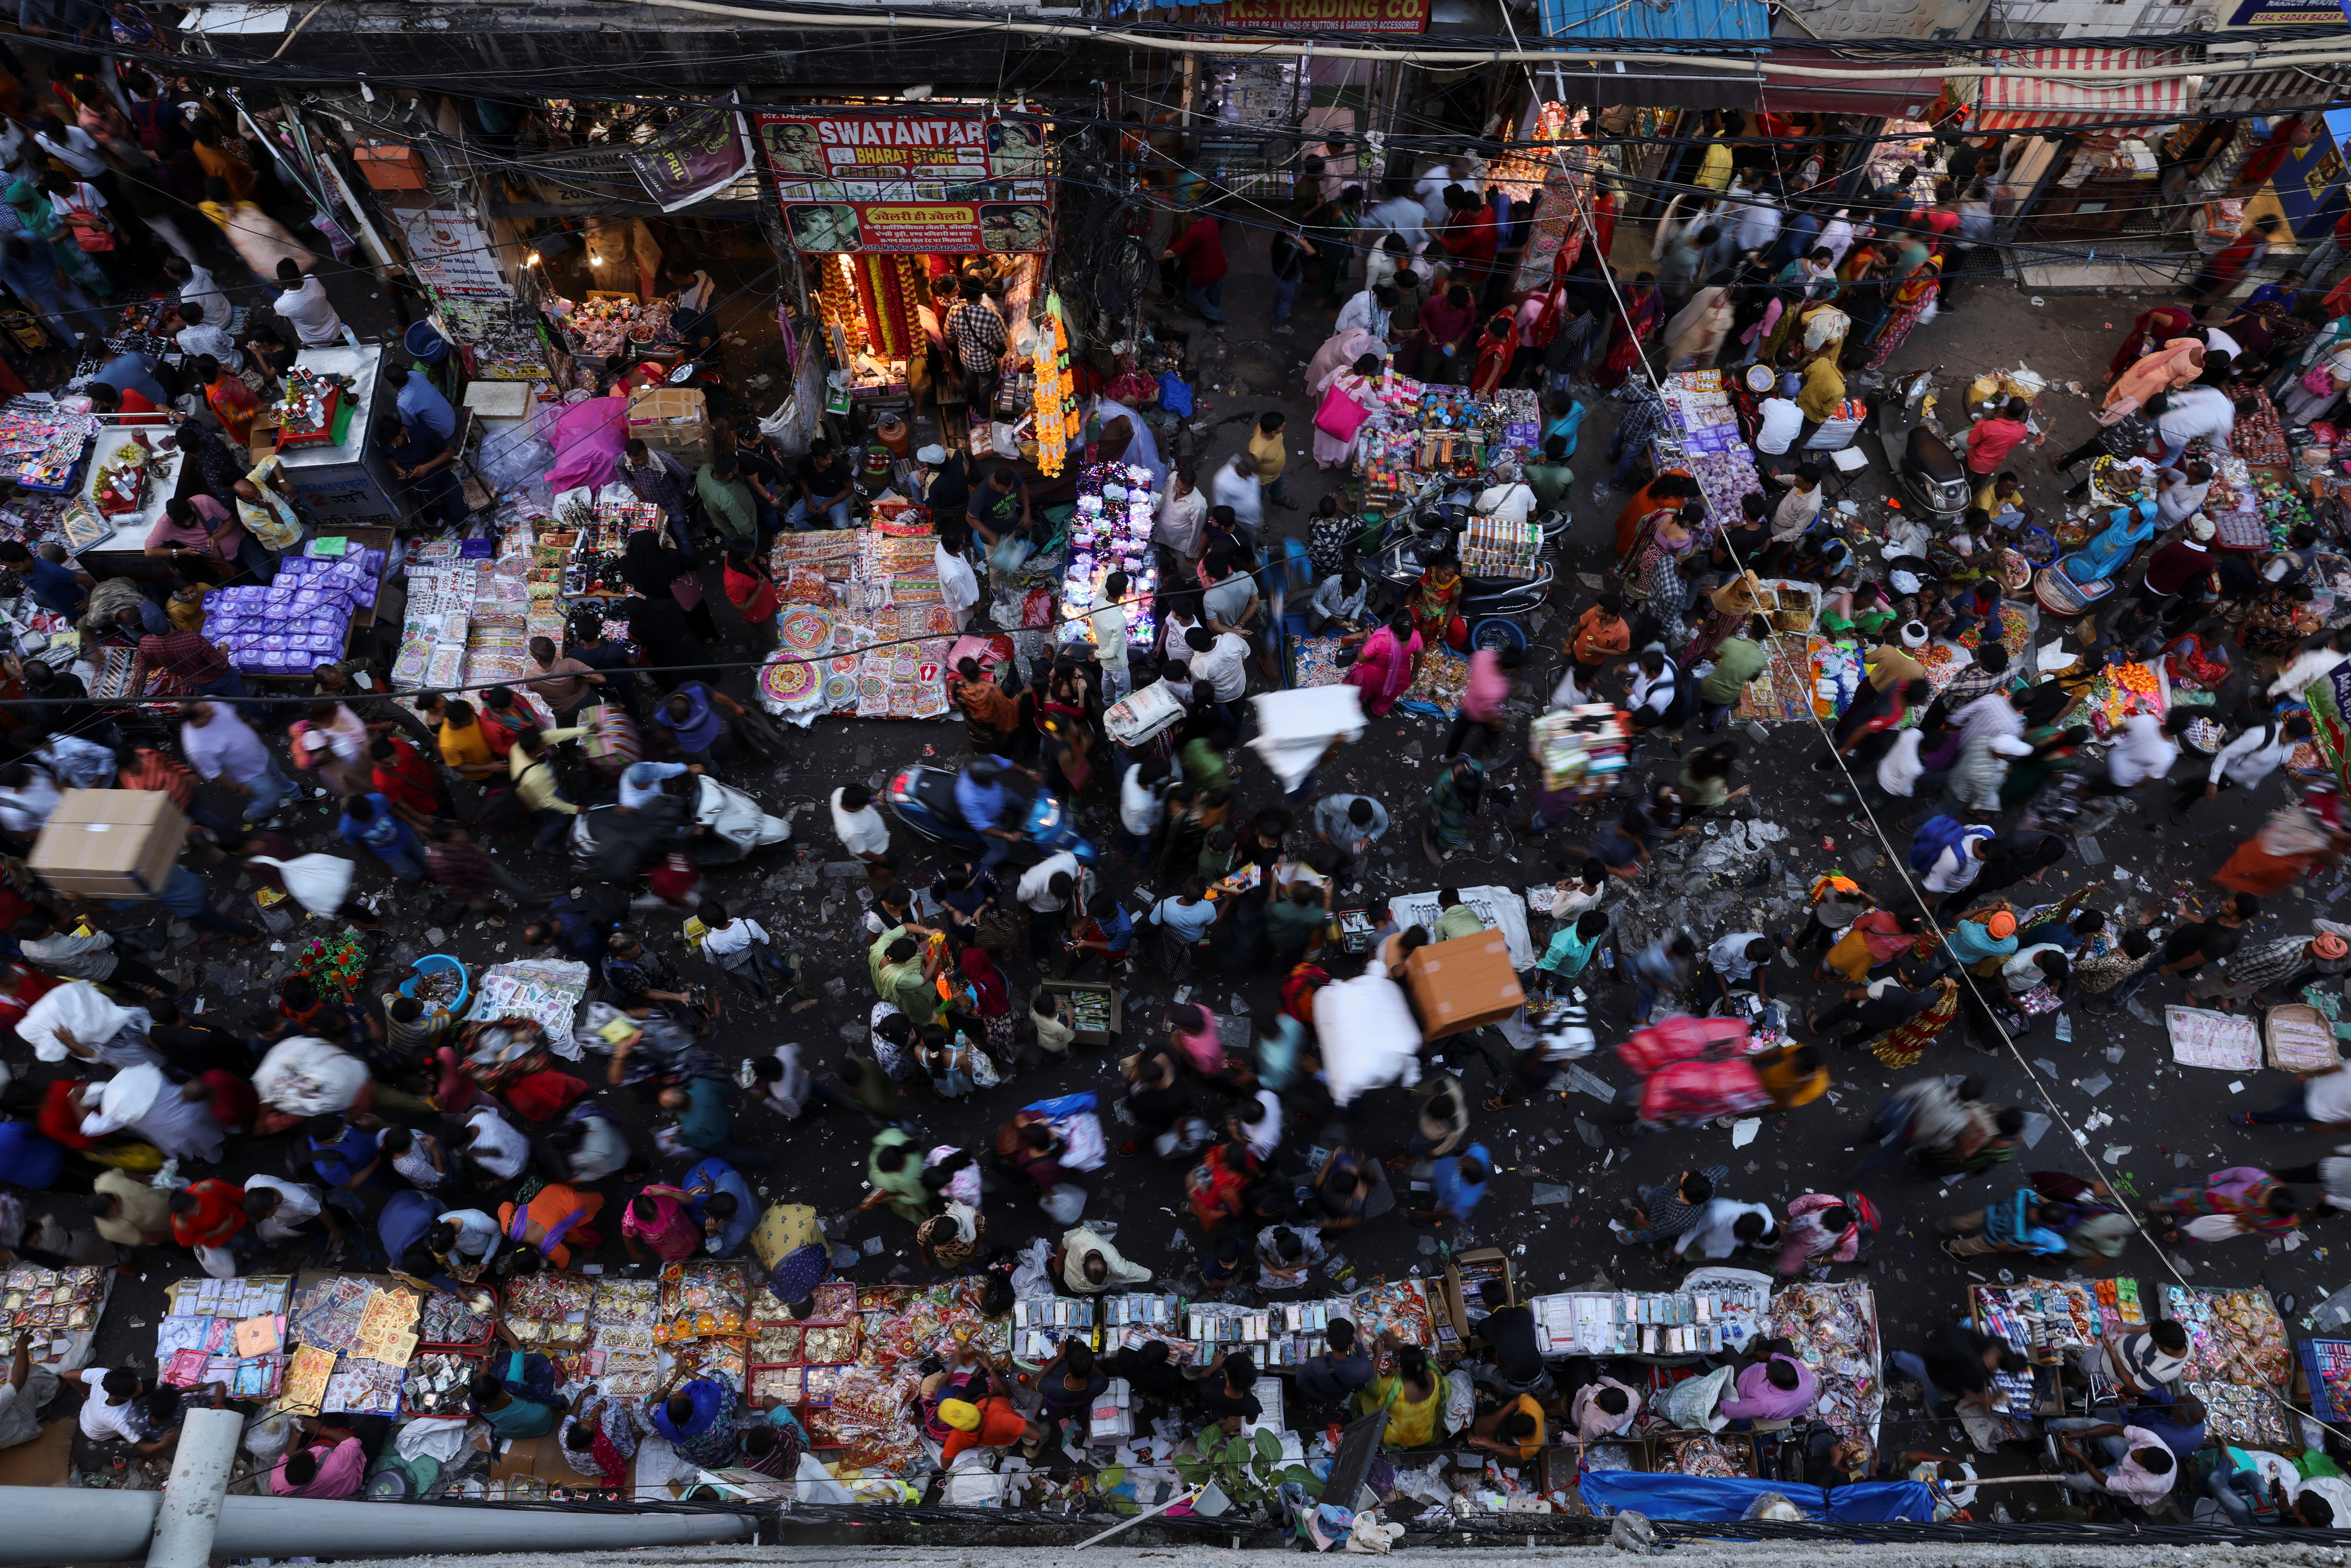 La gente compra en un mercado abarrotado antes de Diwali, el festival hindú de las luces, en los barrios antiguos de Delhi.